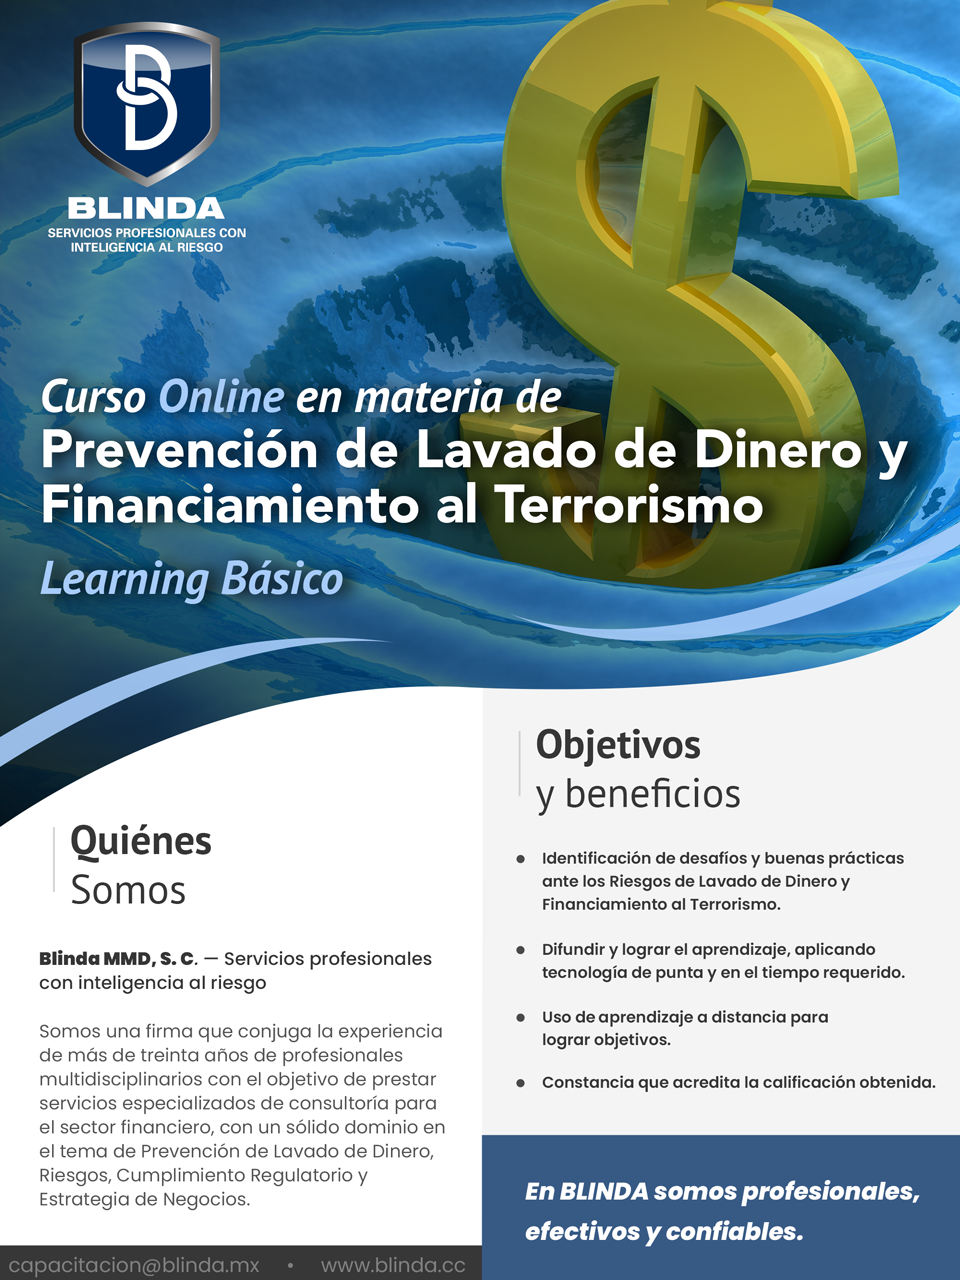 Curso Online en materia de Prevención de Lavado de Dinero y Financiamiento al Terrorismo.